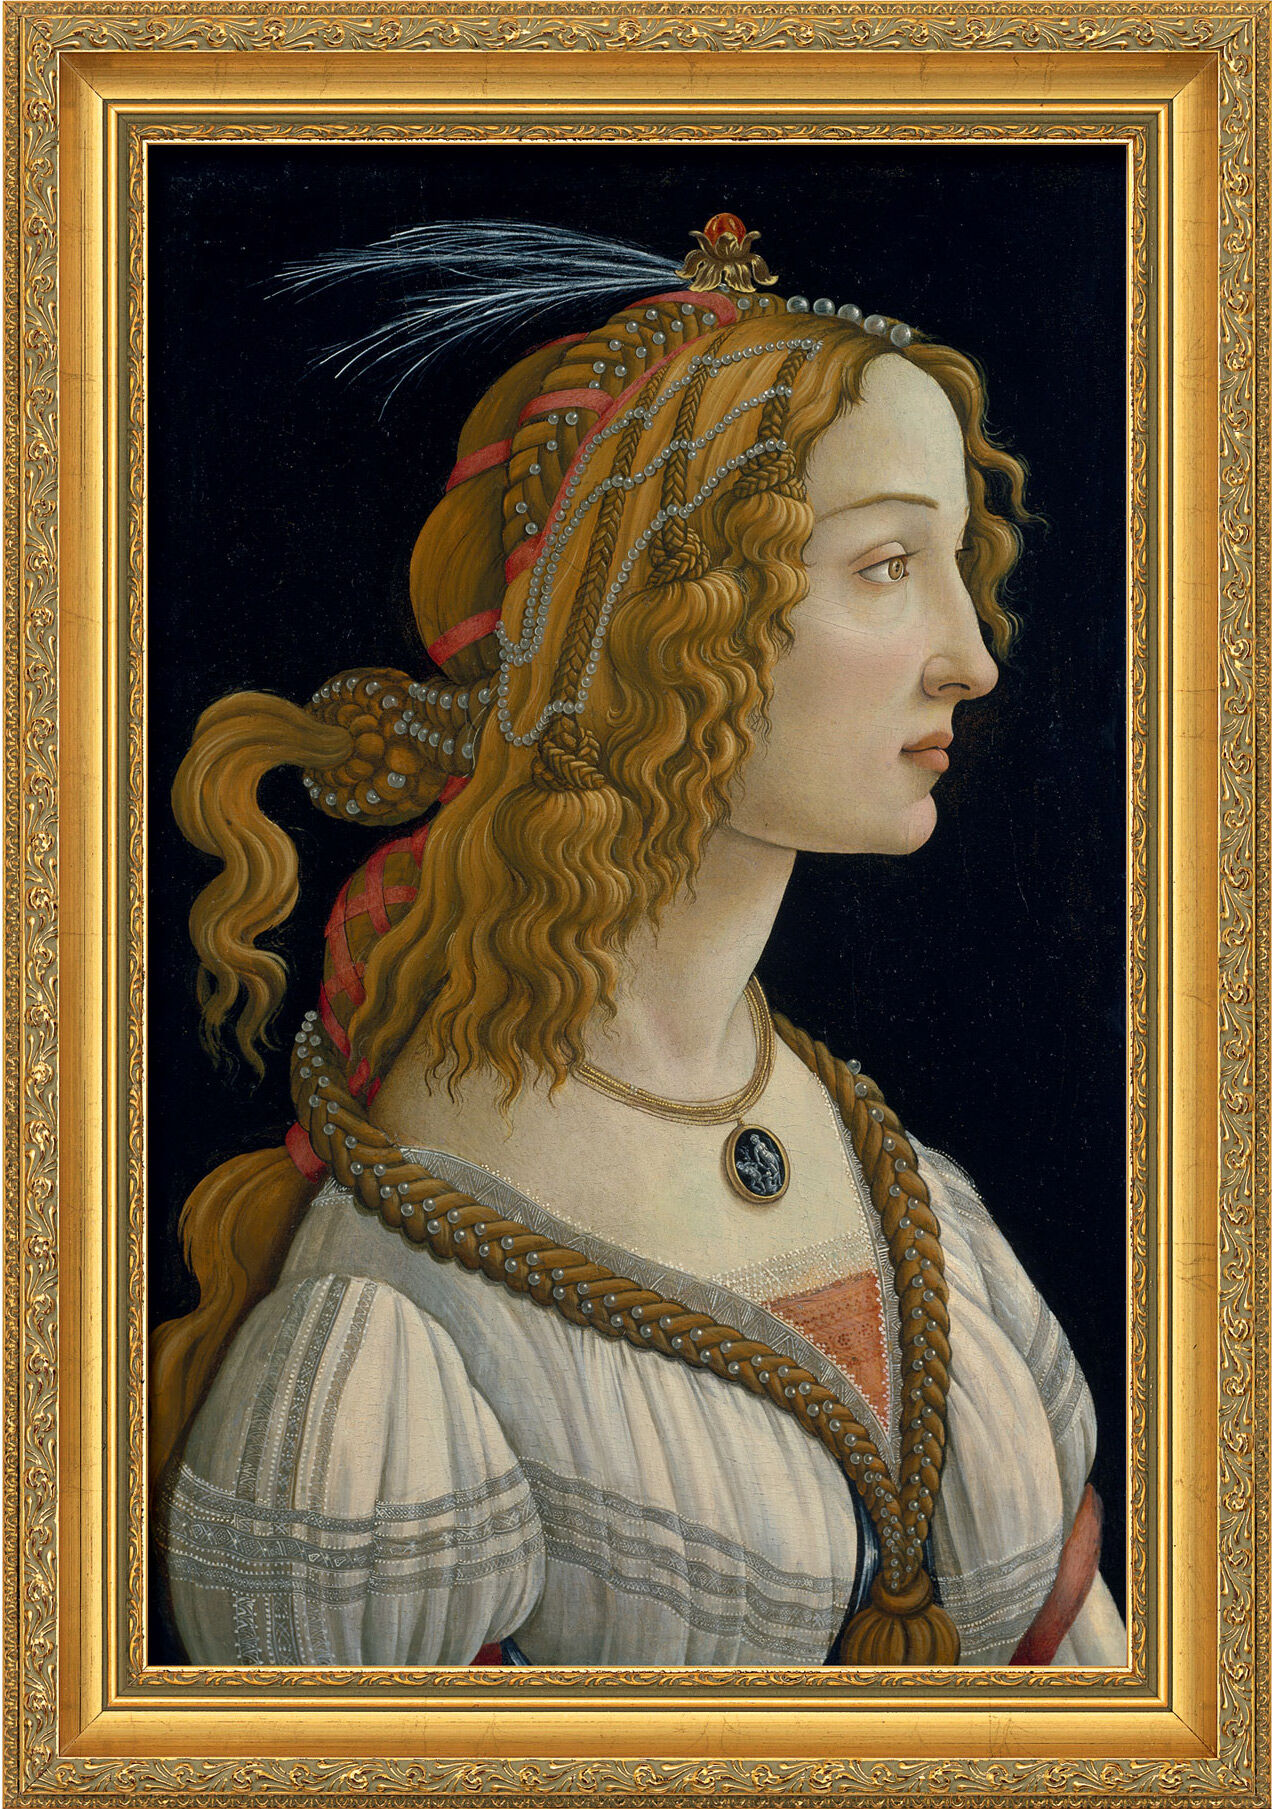 Billede "Portræt af en ung kvinde" (ca. 1480), indrammet von Sandro Botticelli